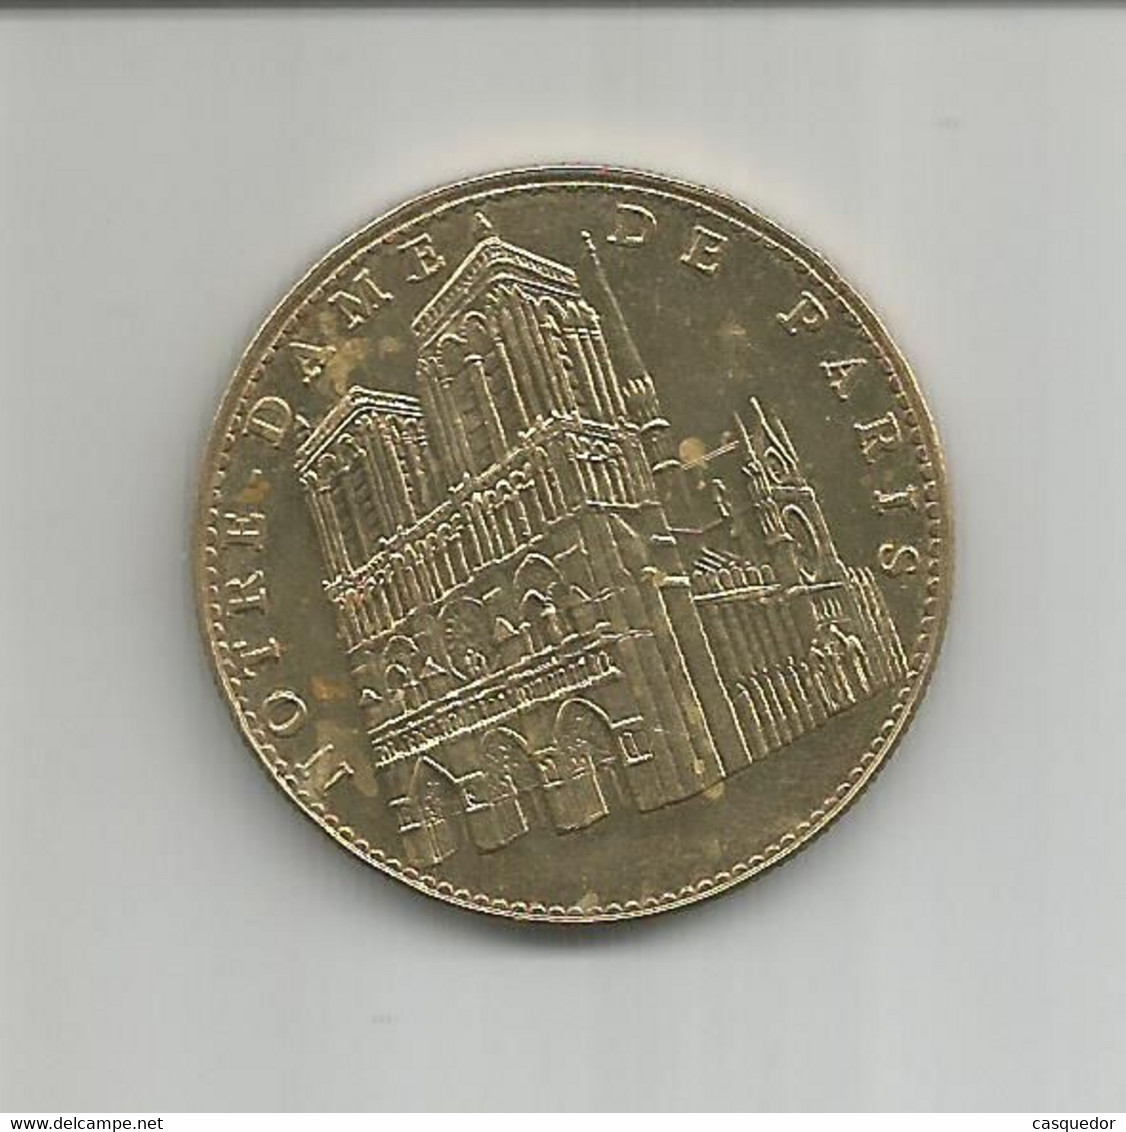 Médaille Touristique Notre Dame De Paris 2005 - 2005